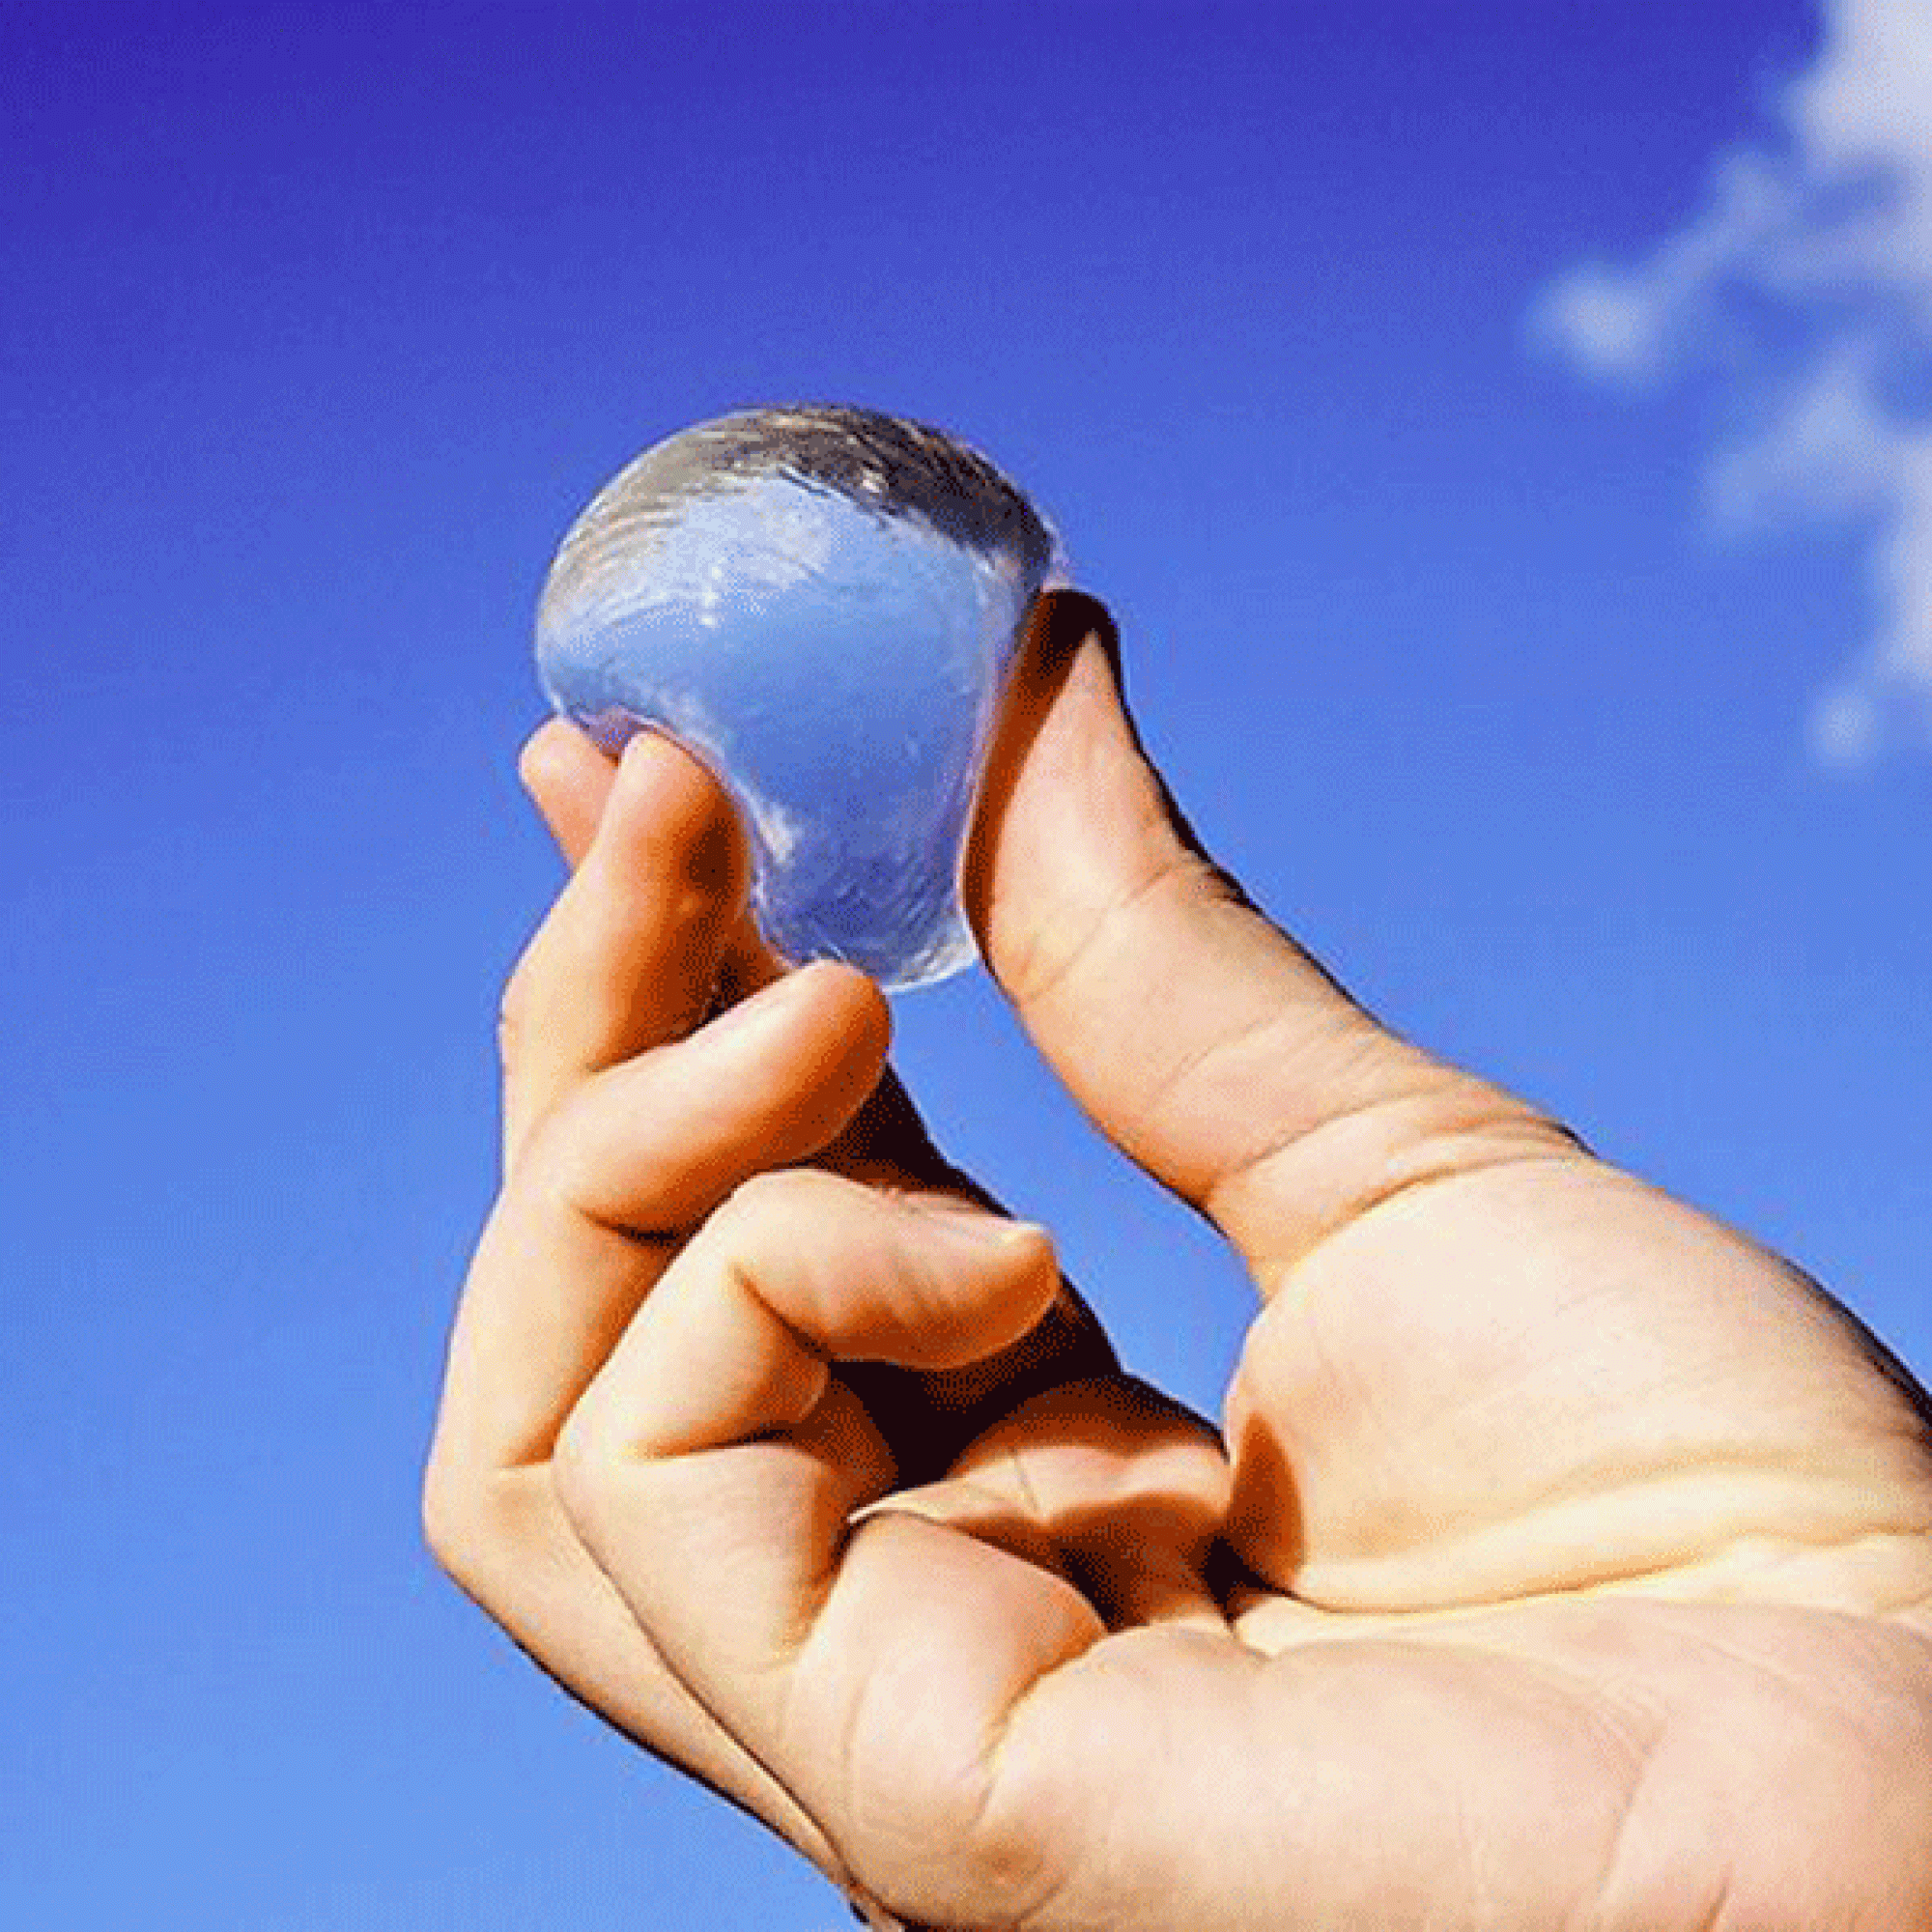 Ein Exemplar der speziellen Wasserblasen. (Bild: skippingrockslab.com)